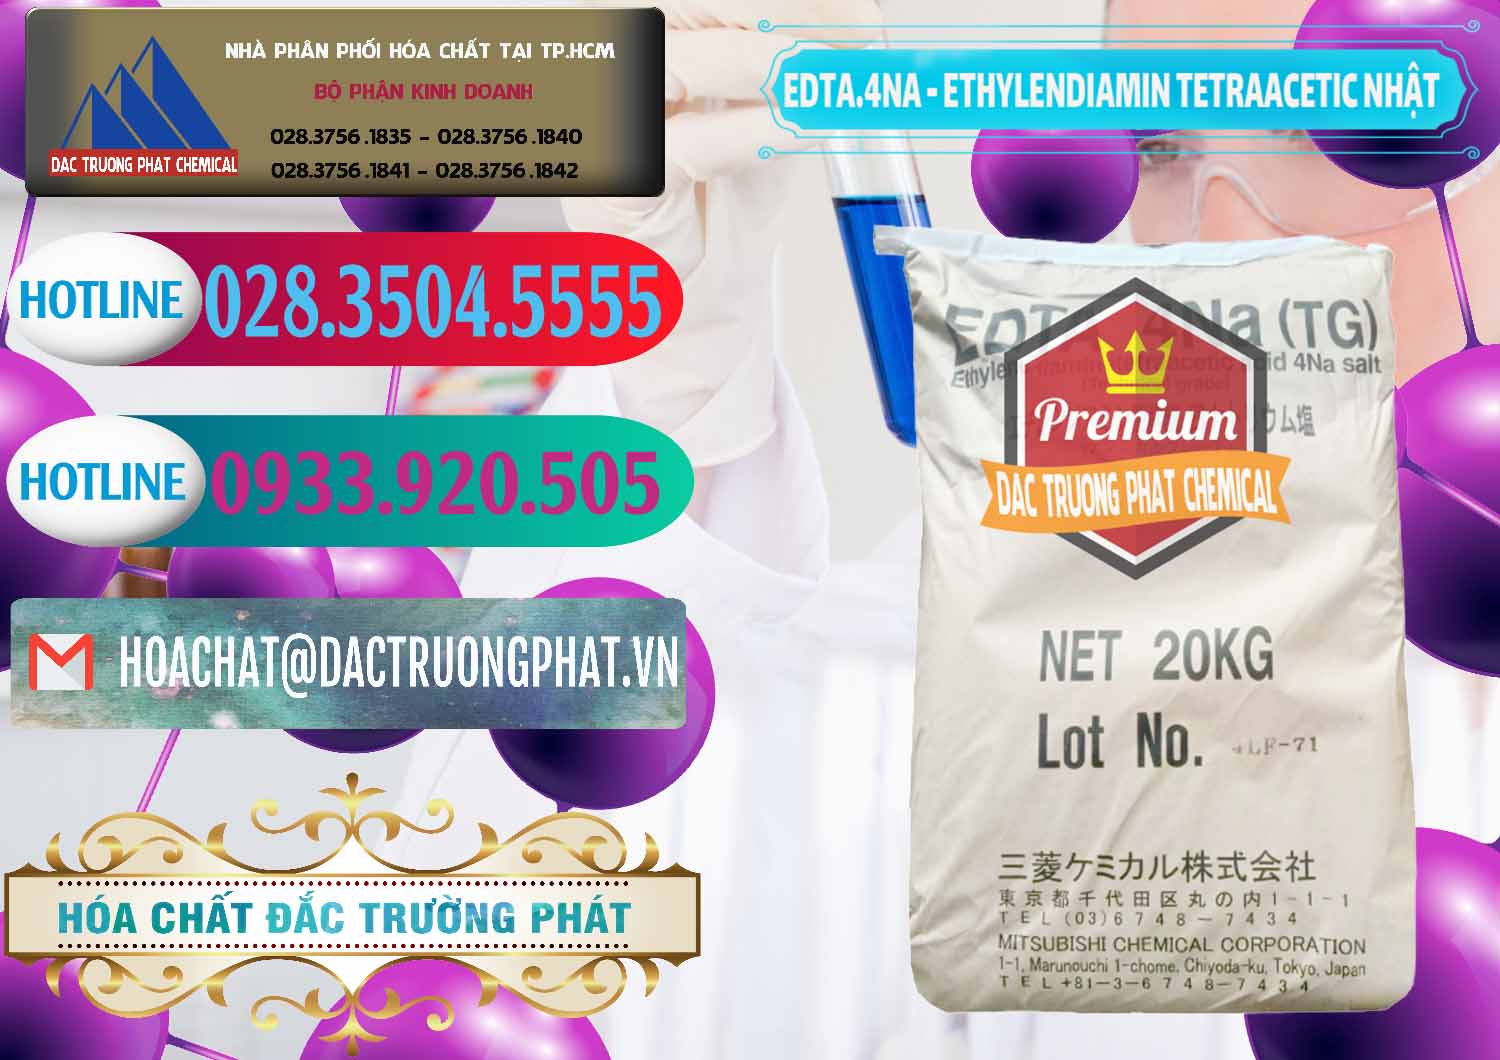 Công ty chuyên phân phối _ bán EDTA 4Na - Ethylendiamin Tetraacetic Nhật Bản Japan - 0482 - Nơi cung ứng ( phân phối ) hóa chất tại TP.HCM - truongphat.vn